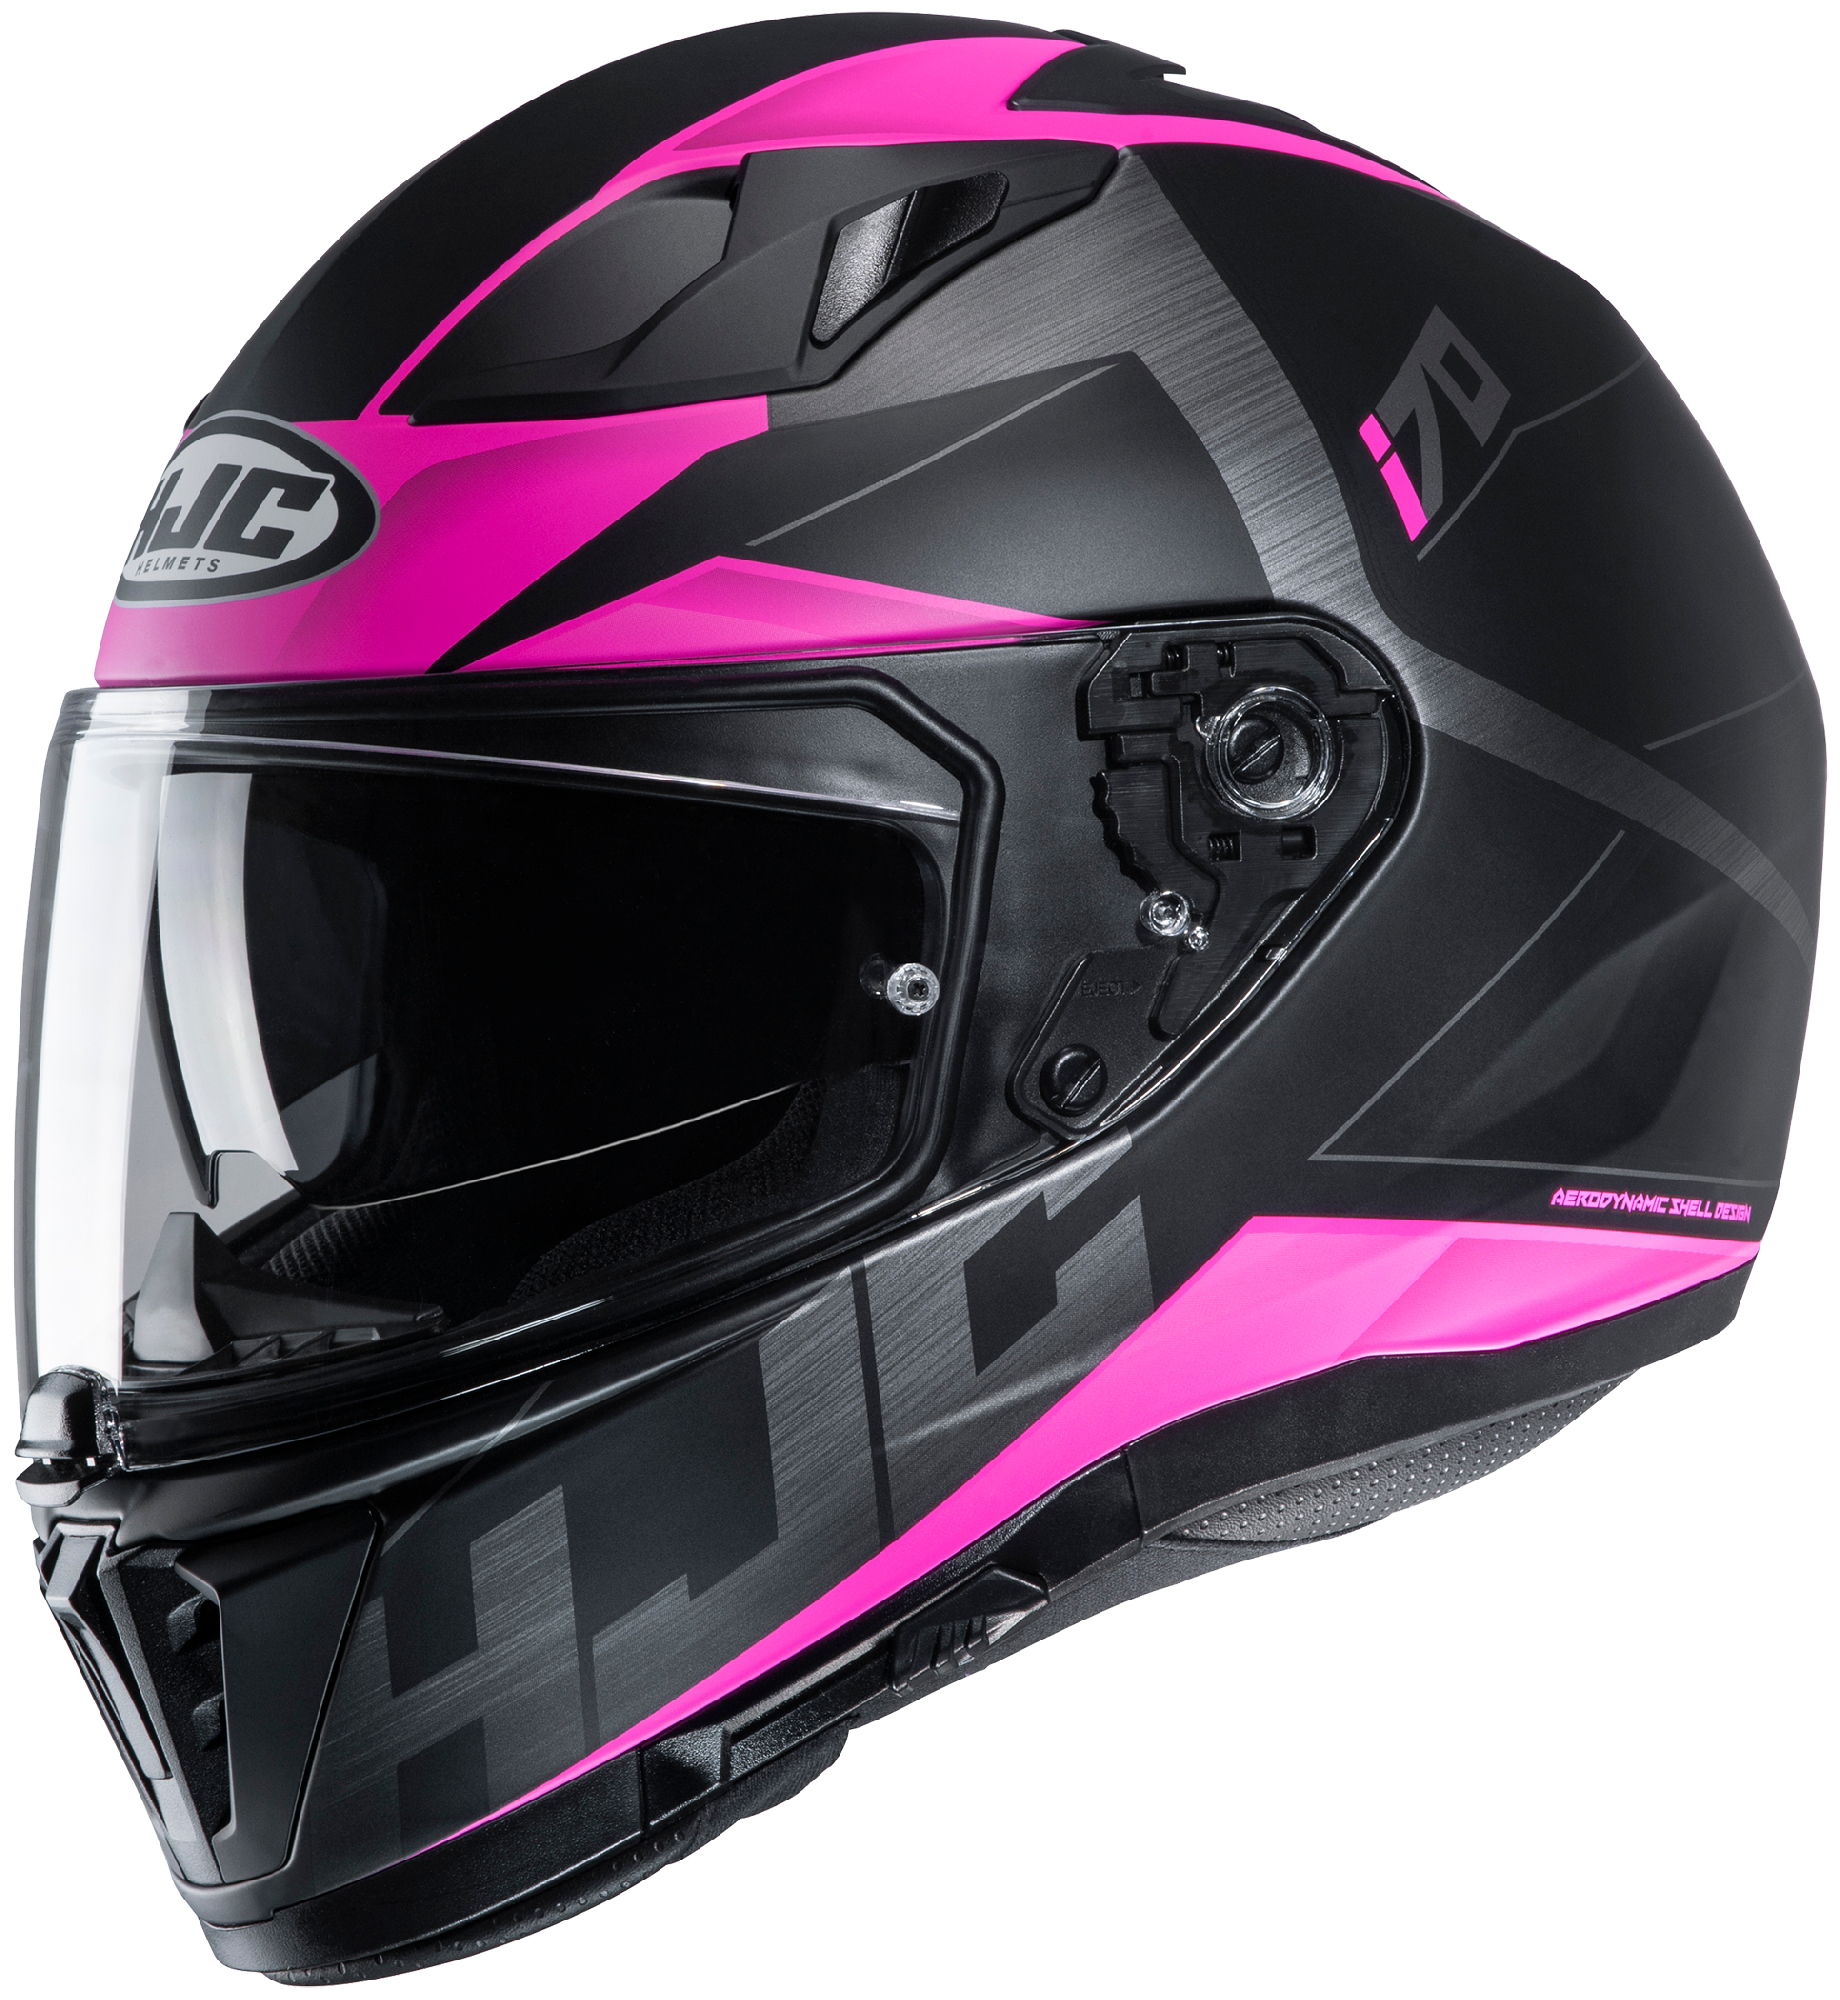 HJC Pink/Black i70 Eluma Full Face Motorcycle Helmet | eBay